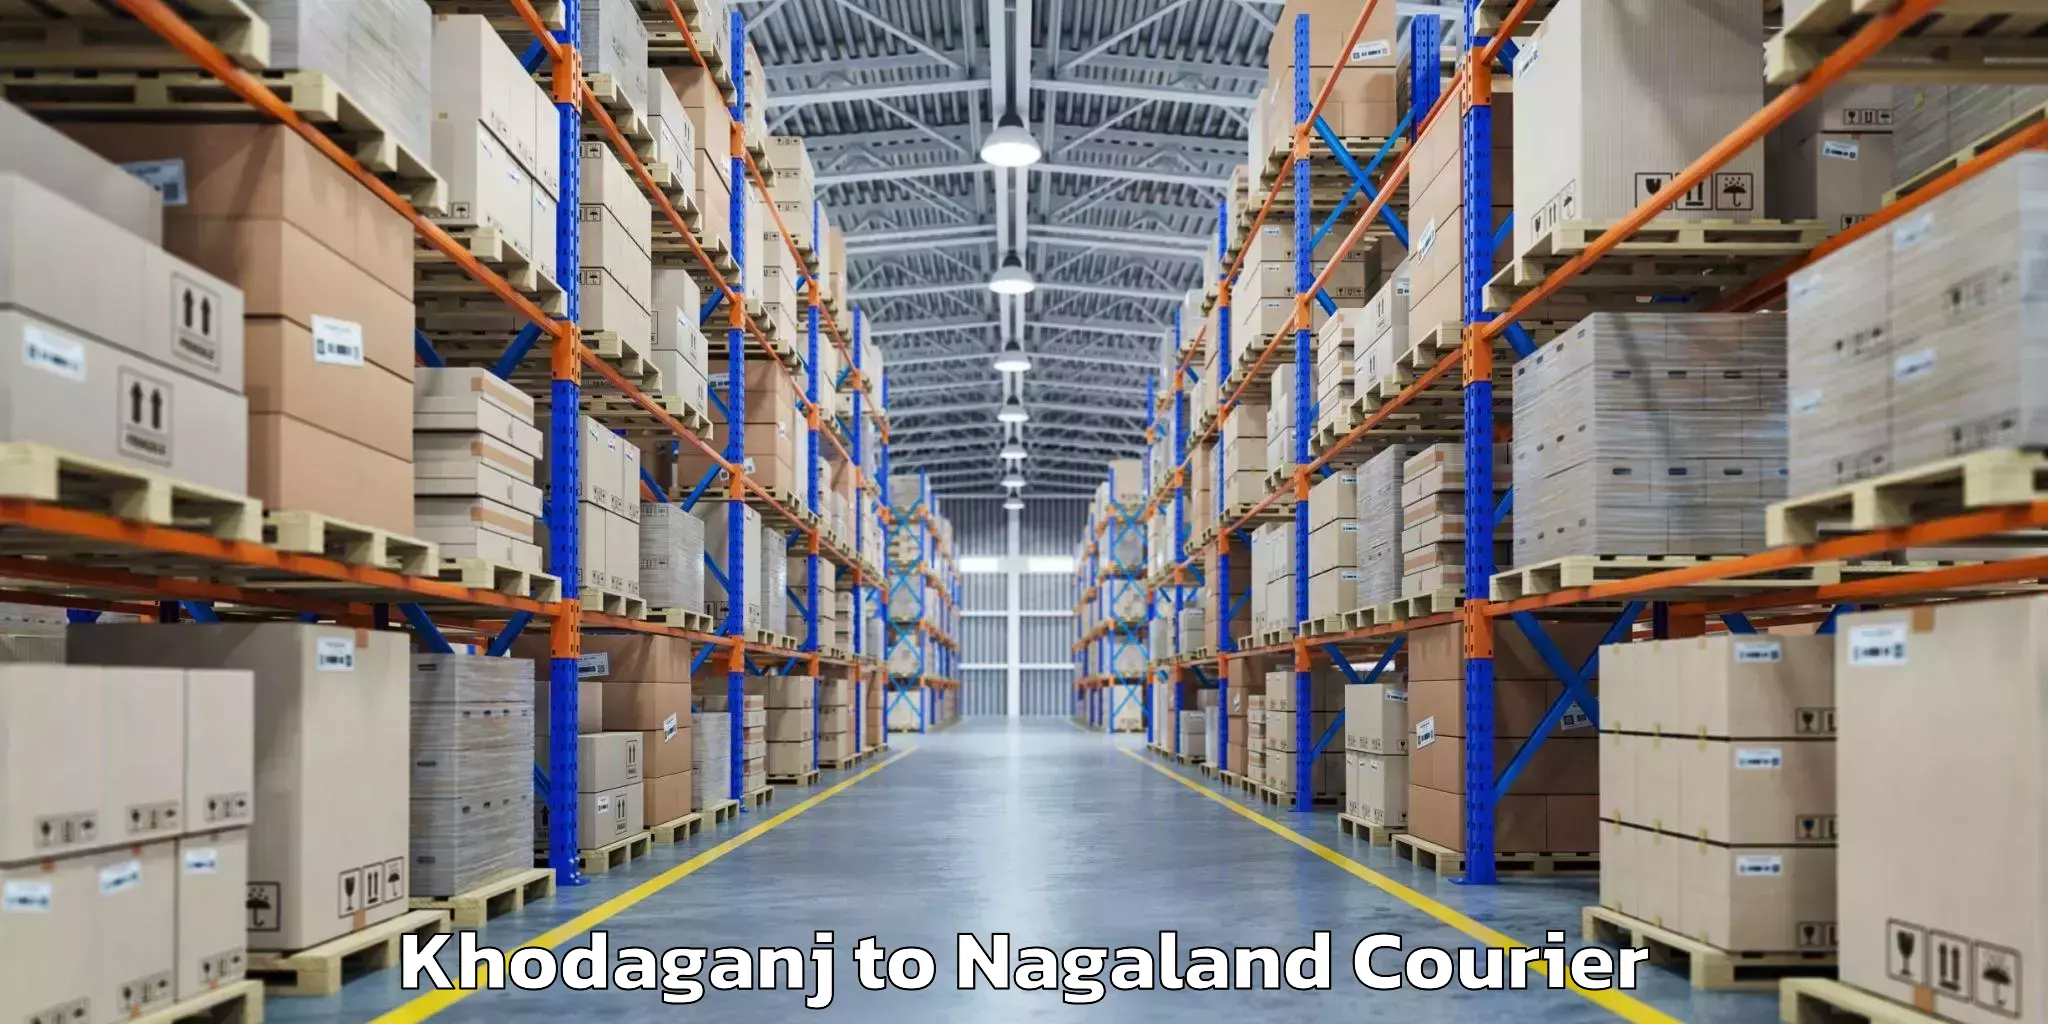 Luggage shipment tracking Khodaganj to Nagaland